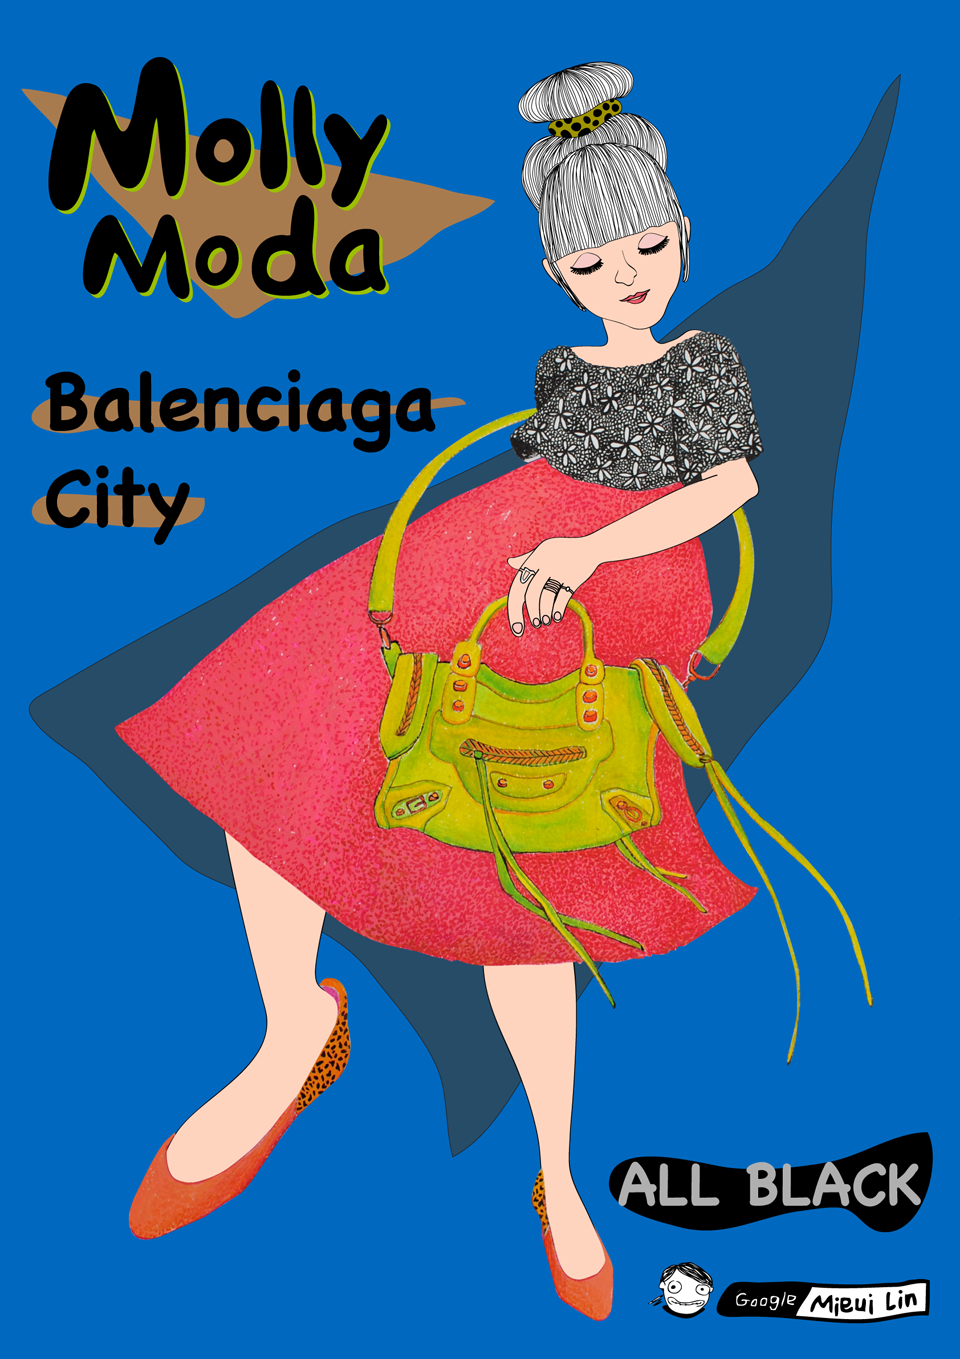 Molly-Moda-_-Italia-_-Balenciaga-Mini-City-_-ALL-BLACK-SHOP-_-MIeui.png